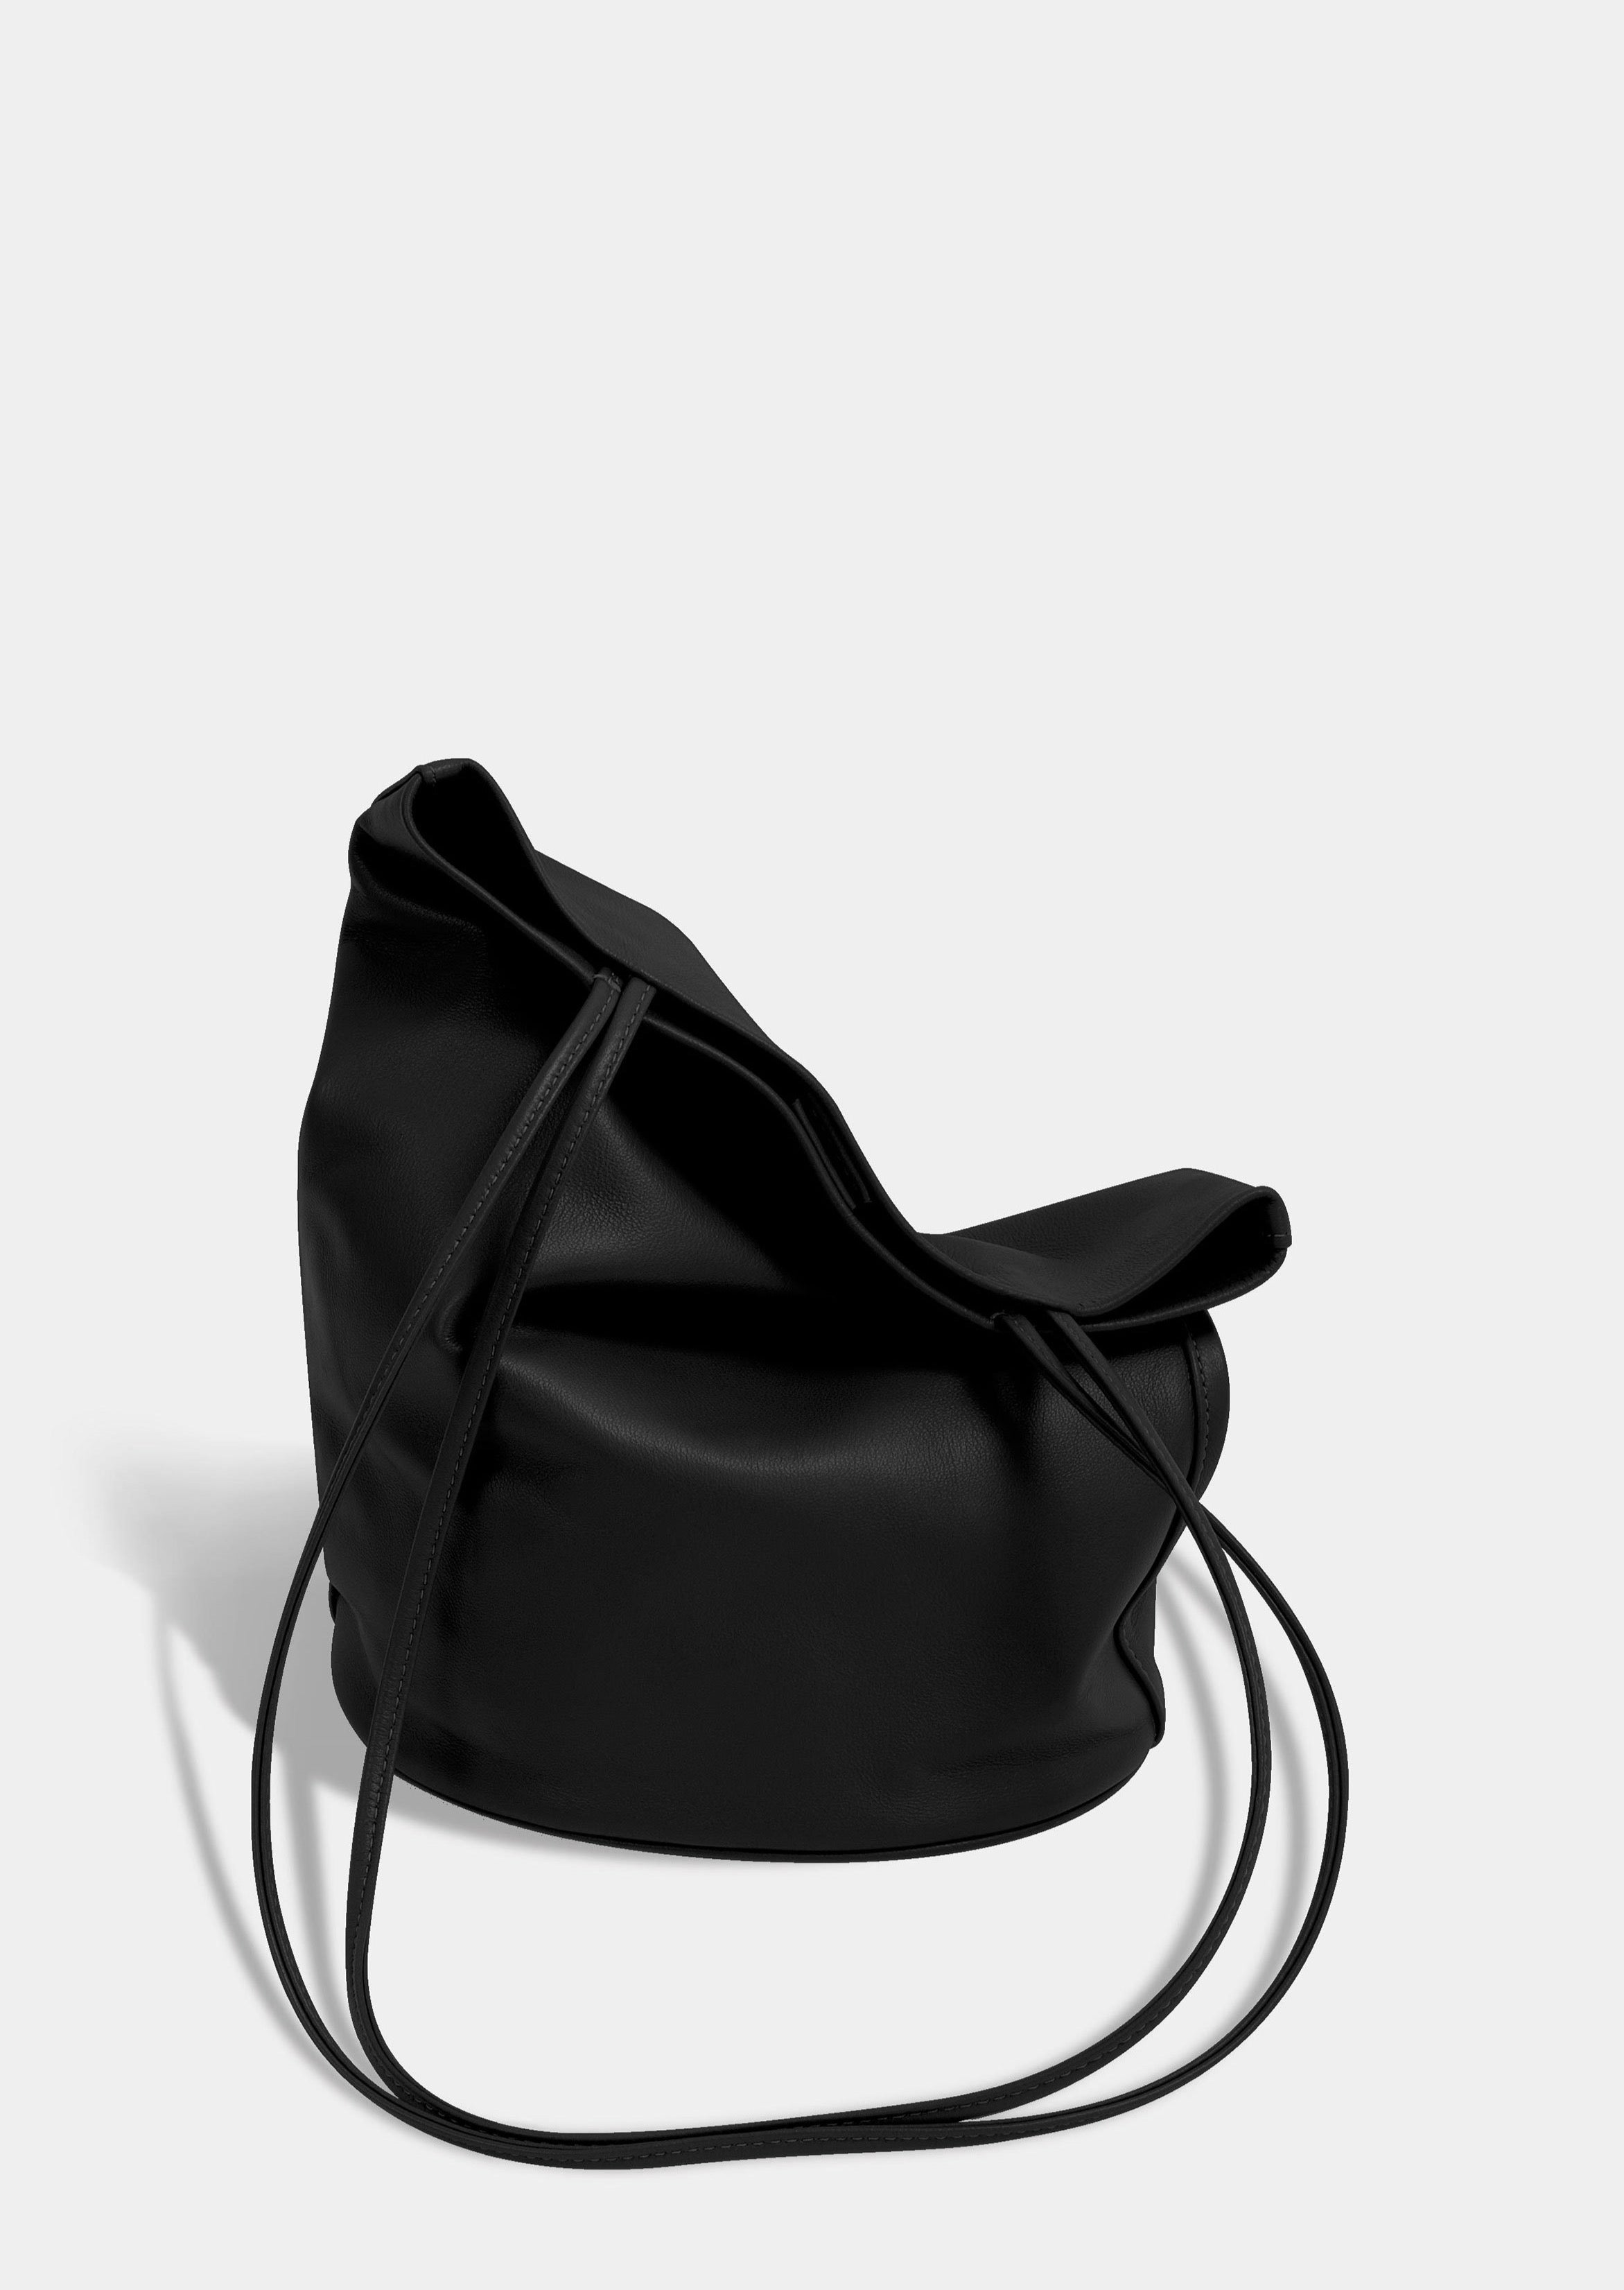 Modern Weaving Draped Oval Bucket Bag in Camel